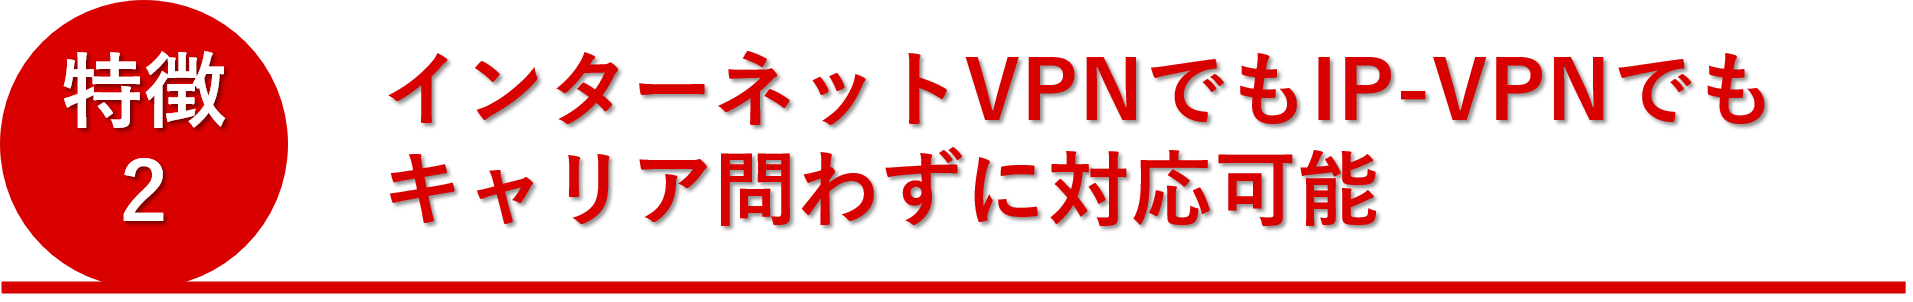 インターネットVPNでもIP-VPNでも キャリア問わずに対応可能